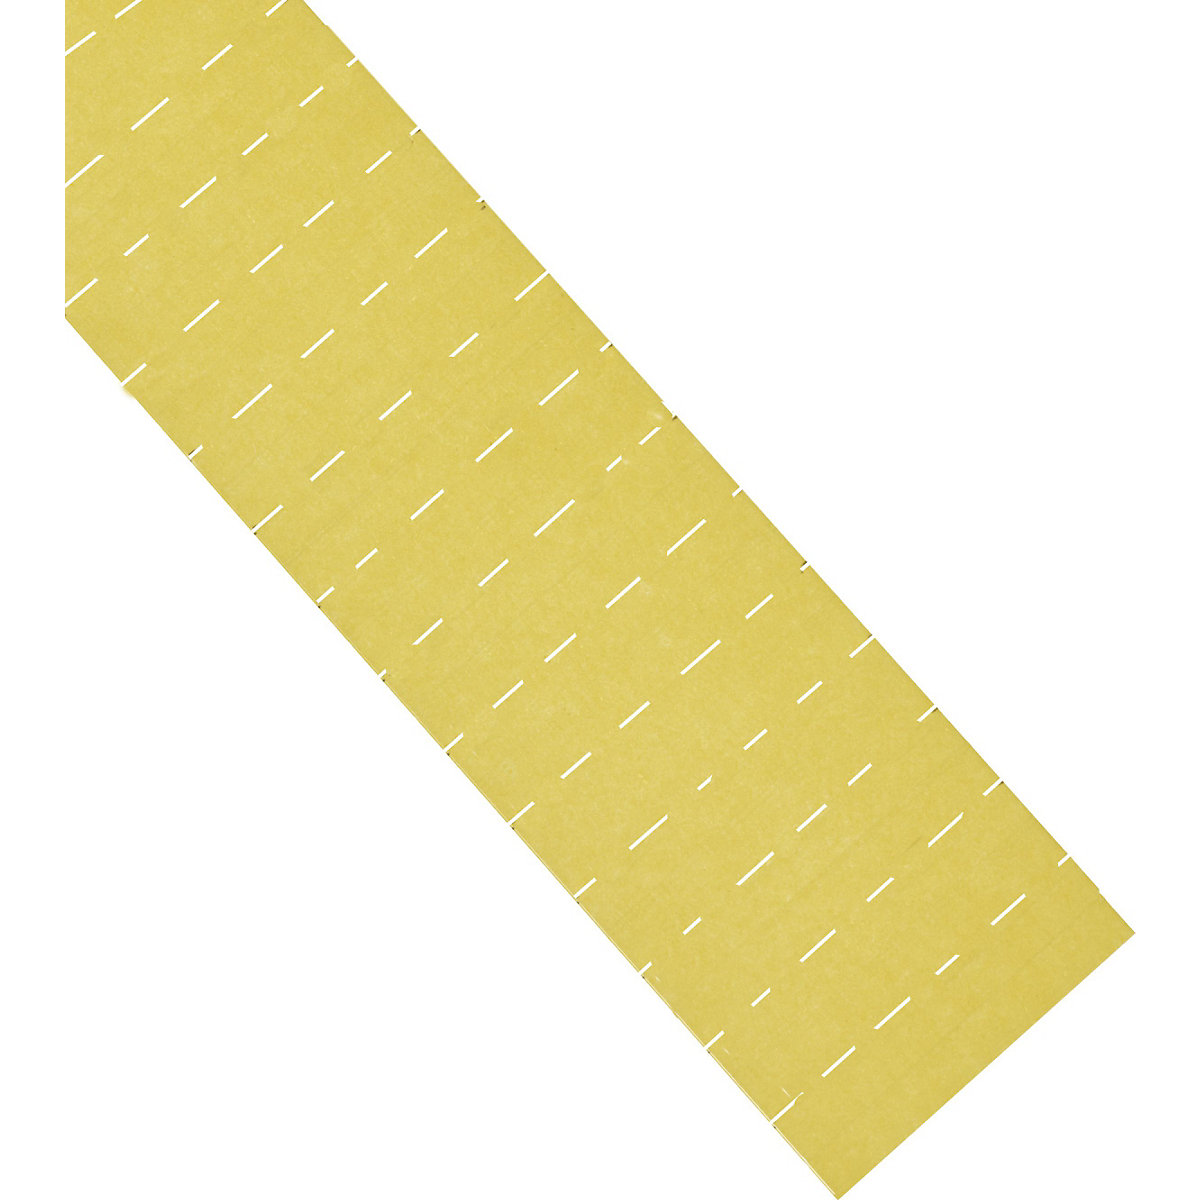 Etikete ferrocard – magnetoplan, VxŠ 10 x 50 mm, pak. 615 kom., u žutoj boji